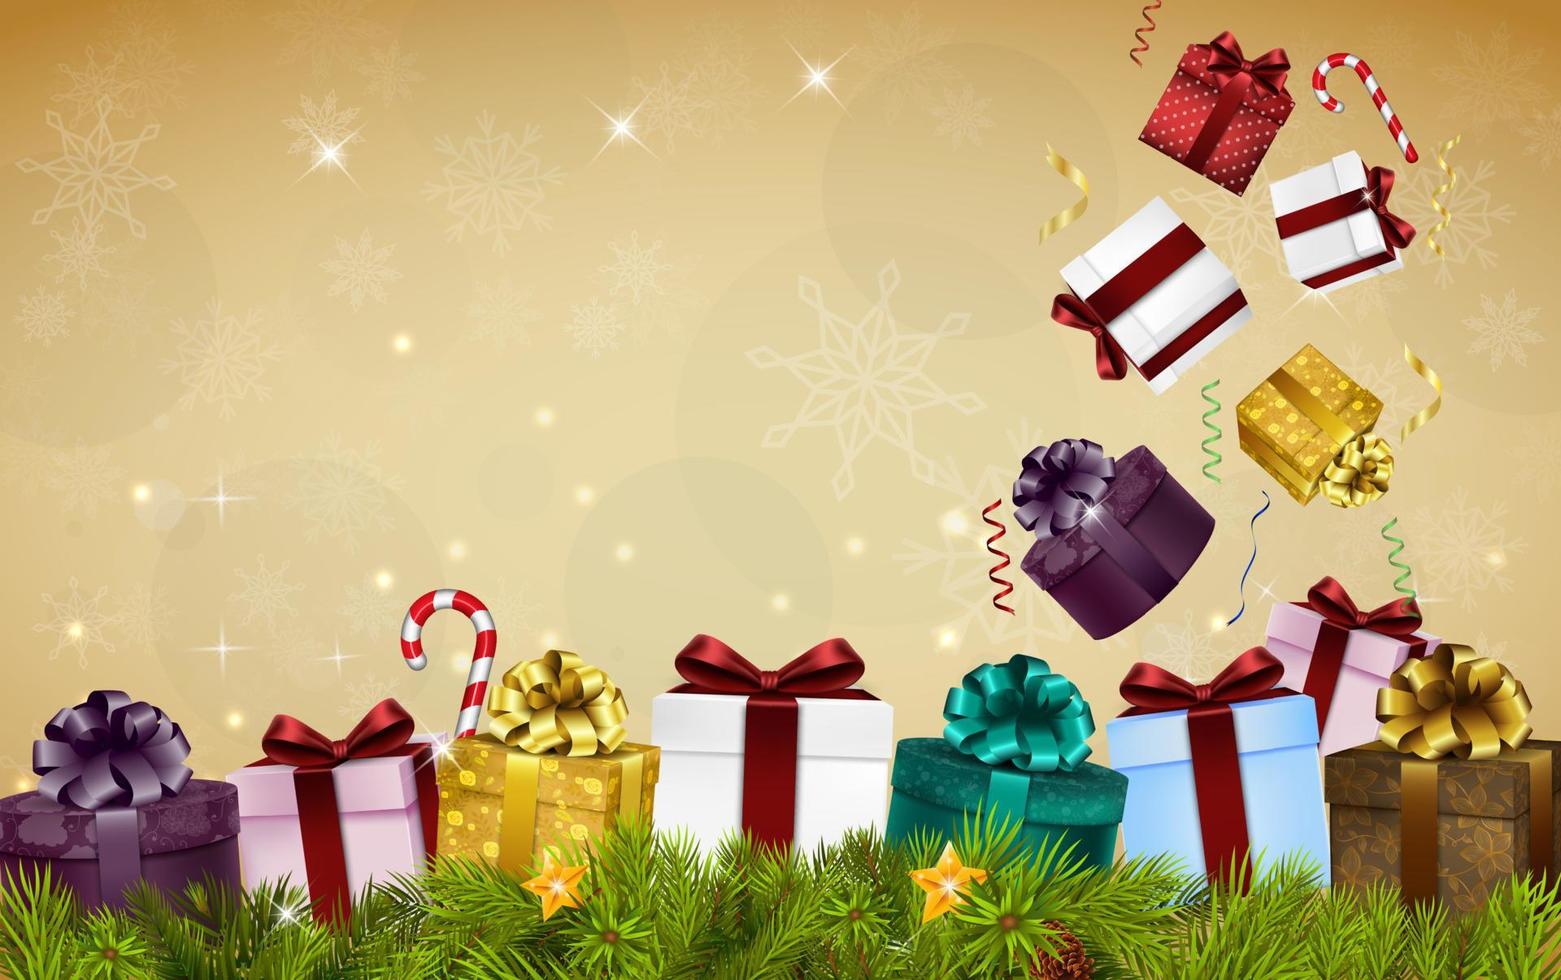 vrolijke kerstachtergrond met geschenkdozen, ballonnen, snoepjes en dennenboom vector